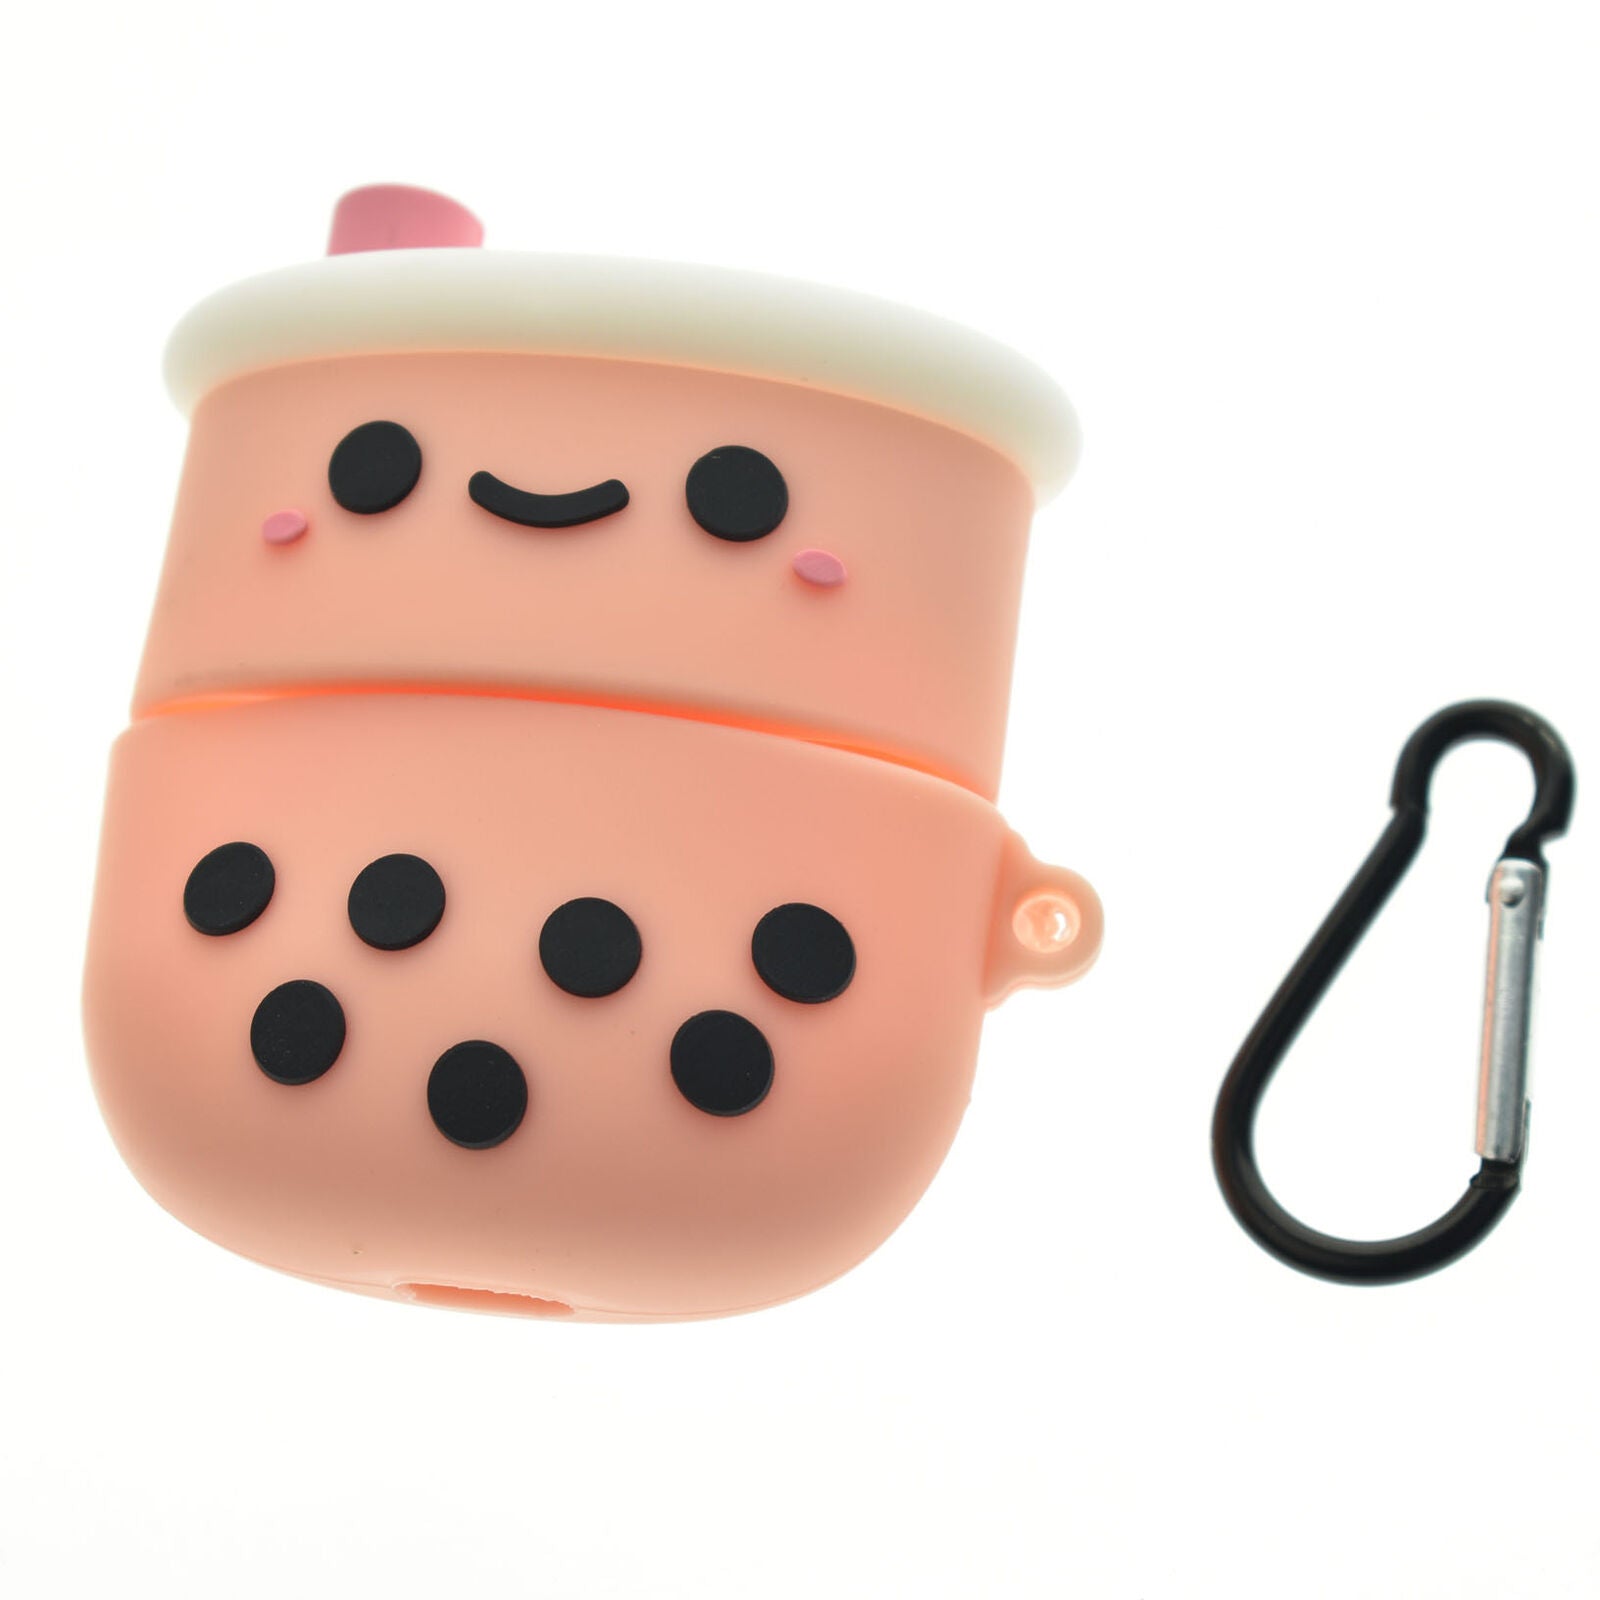 Boba Tea For Airpods Pro3 Case -Super Cute Fun Gift Idea + Keychain Clip